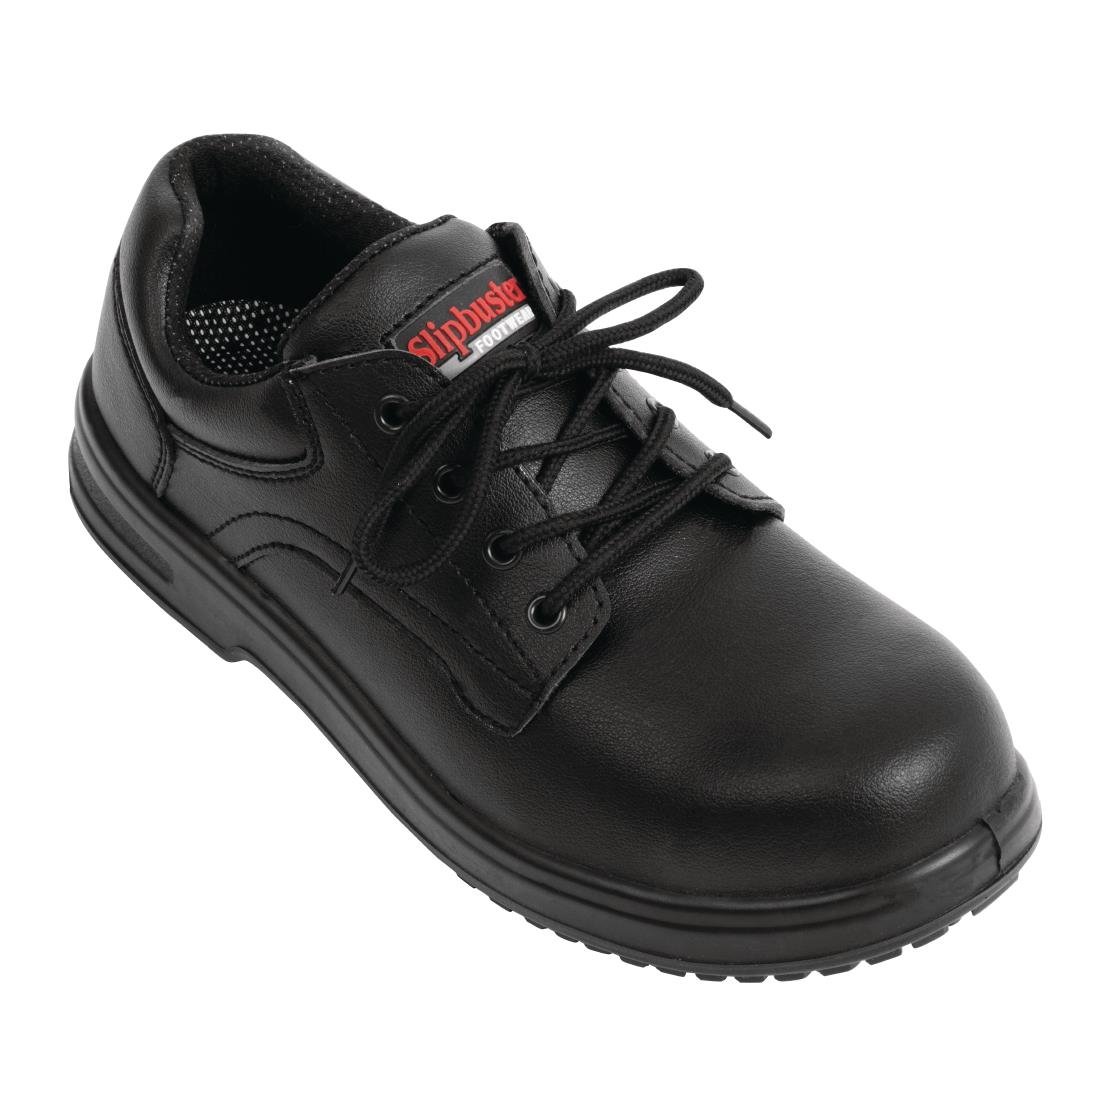 BB498-46 Slipbuster Basic Shoes Slip Resistant Black 46 JD Catering Equipment Solutions Ltd